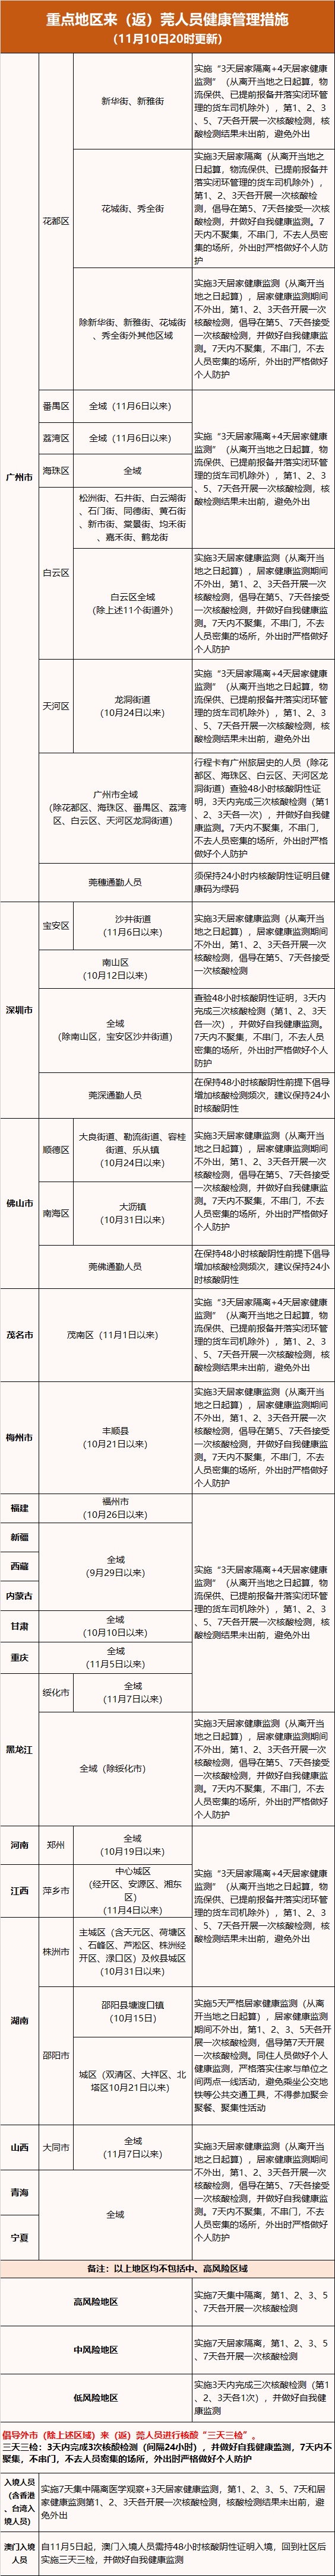 11月10日0—20时东莞市新增22例无症状感染者